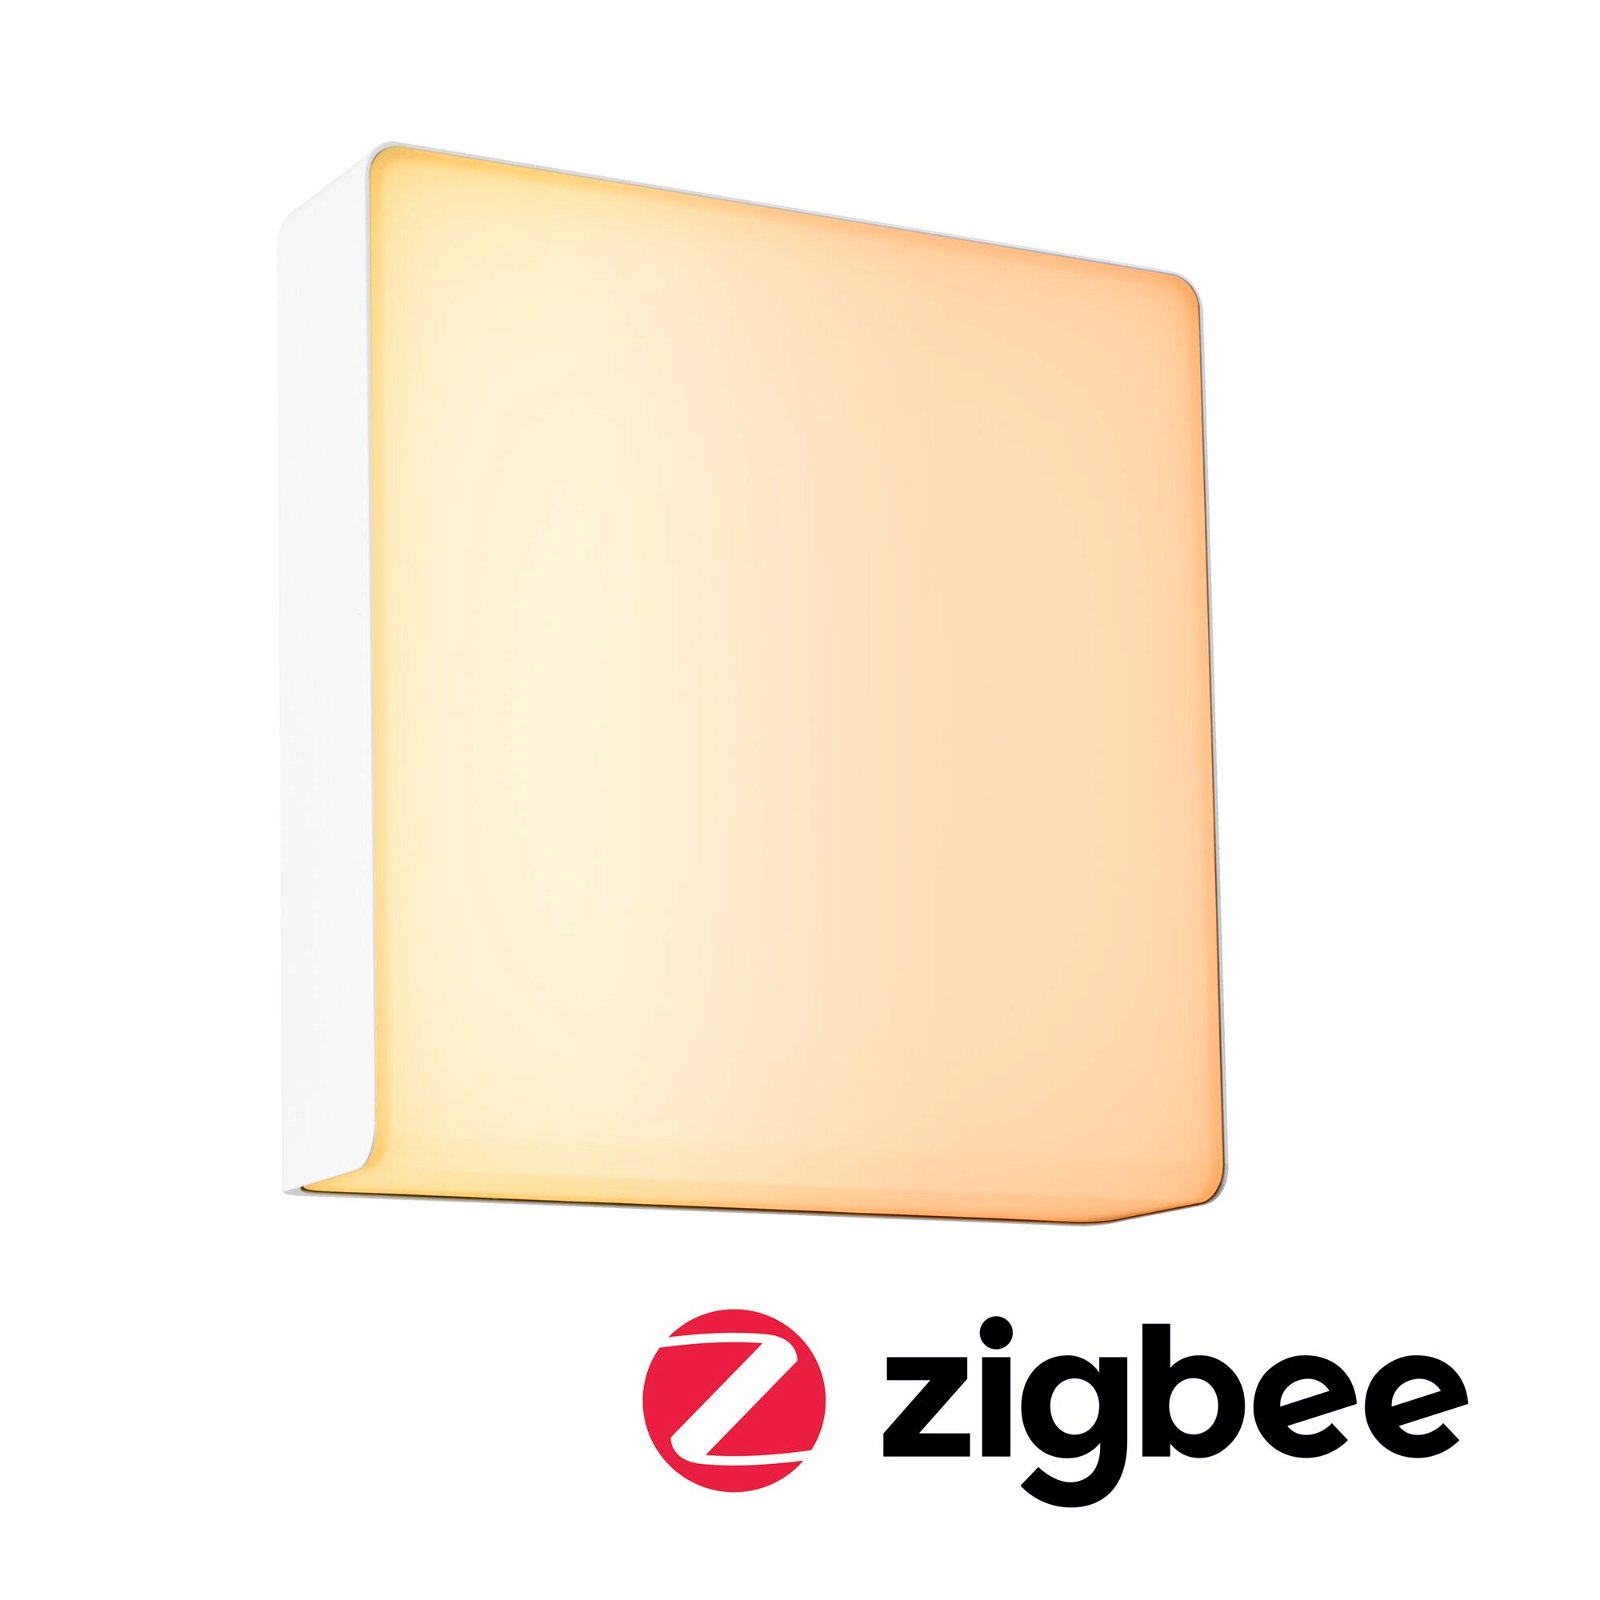 LED Außenwandleuchte Smart Home Zigbee 3.0 Azalena Bewegungsmelder mit Hochfrequenz-Sensor insektenfreundlich IP44 250x97mm Tunable Warm 8,5W 700lm 230V Weiß Kunststoff/Aluminium